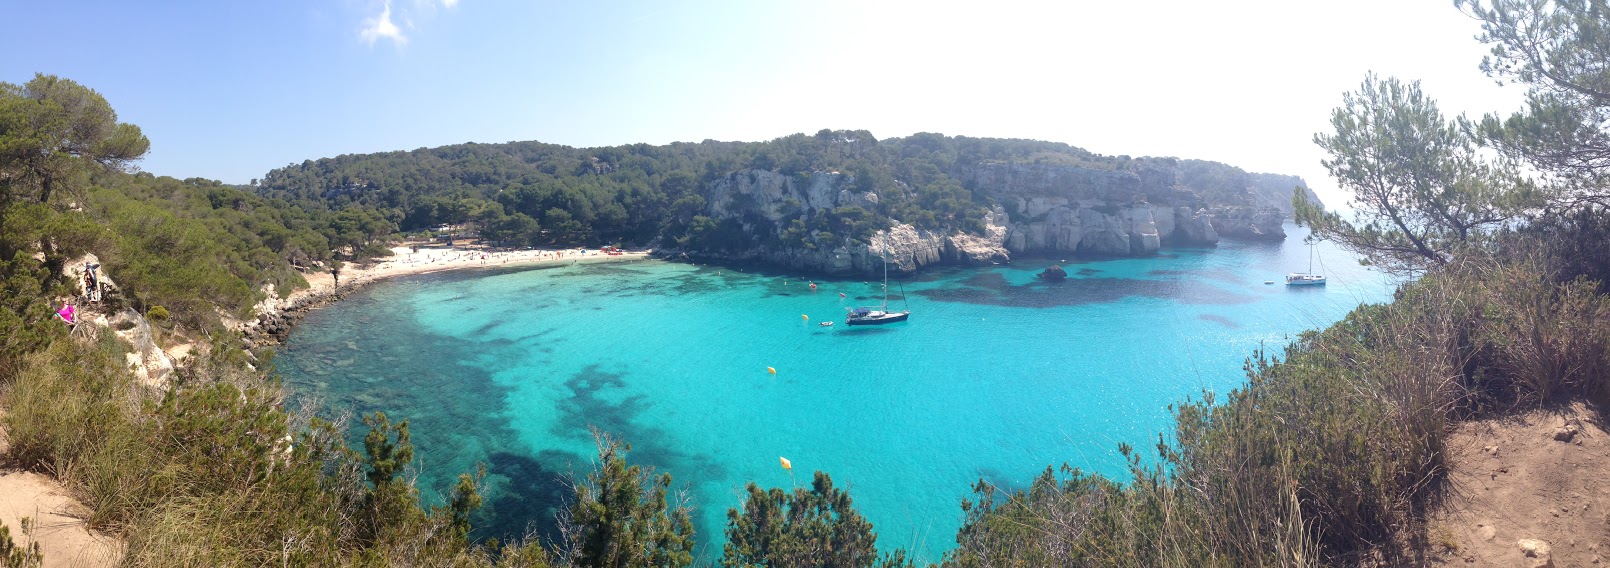 Ilha de Menorca